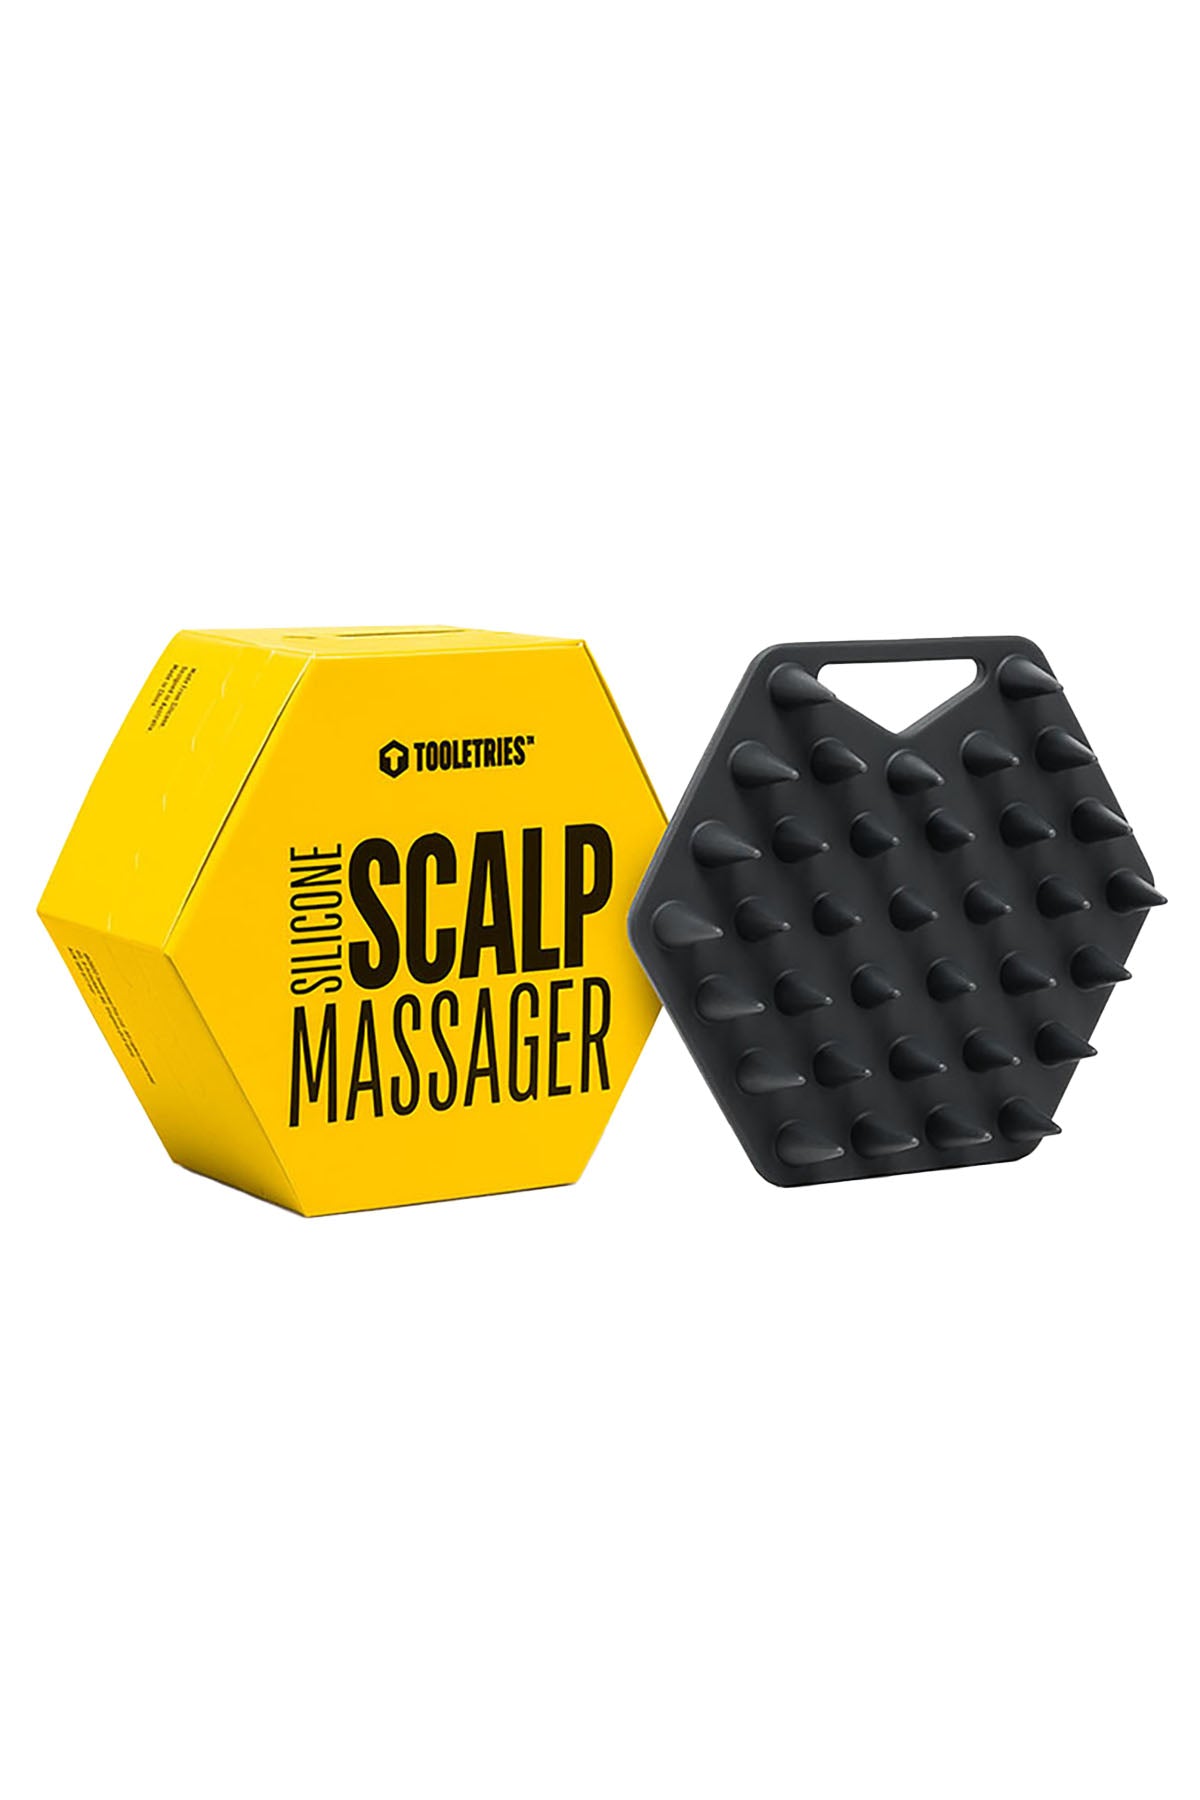 Tooletries The Scalp Massager